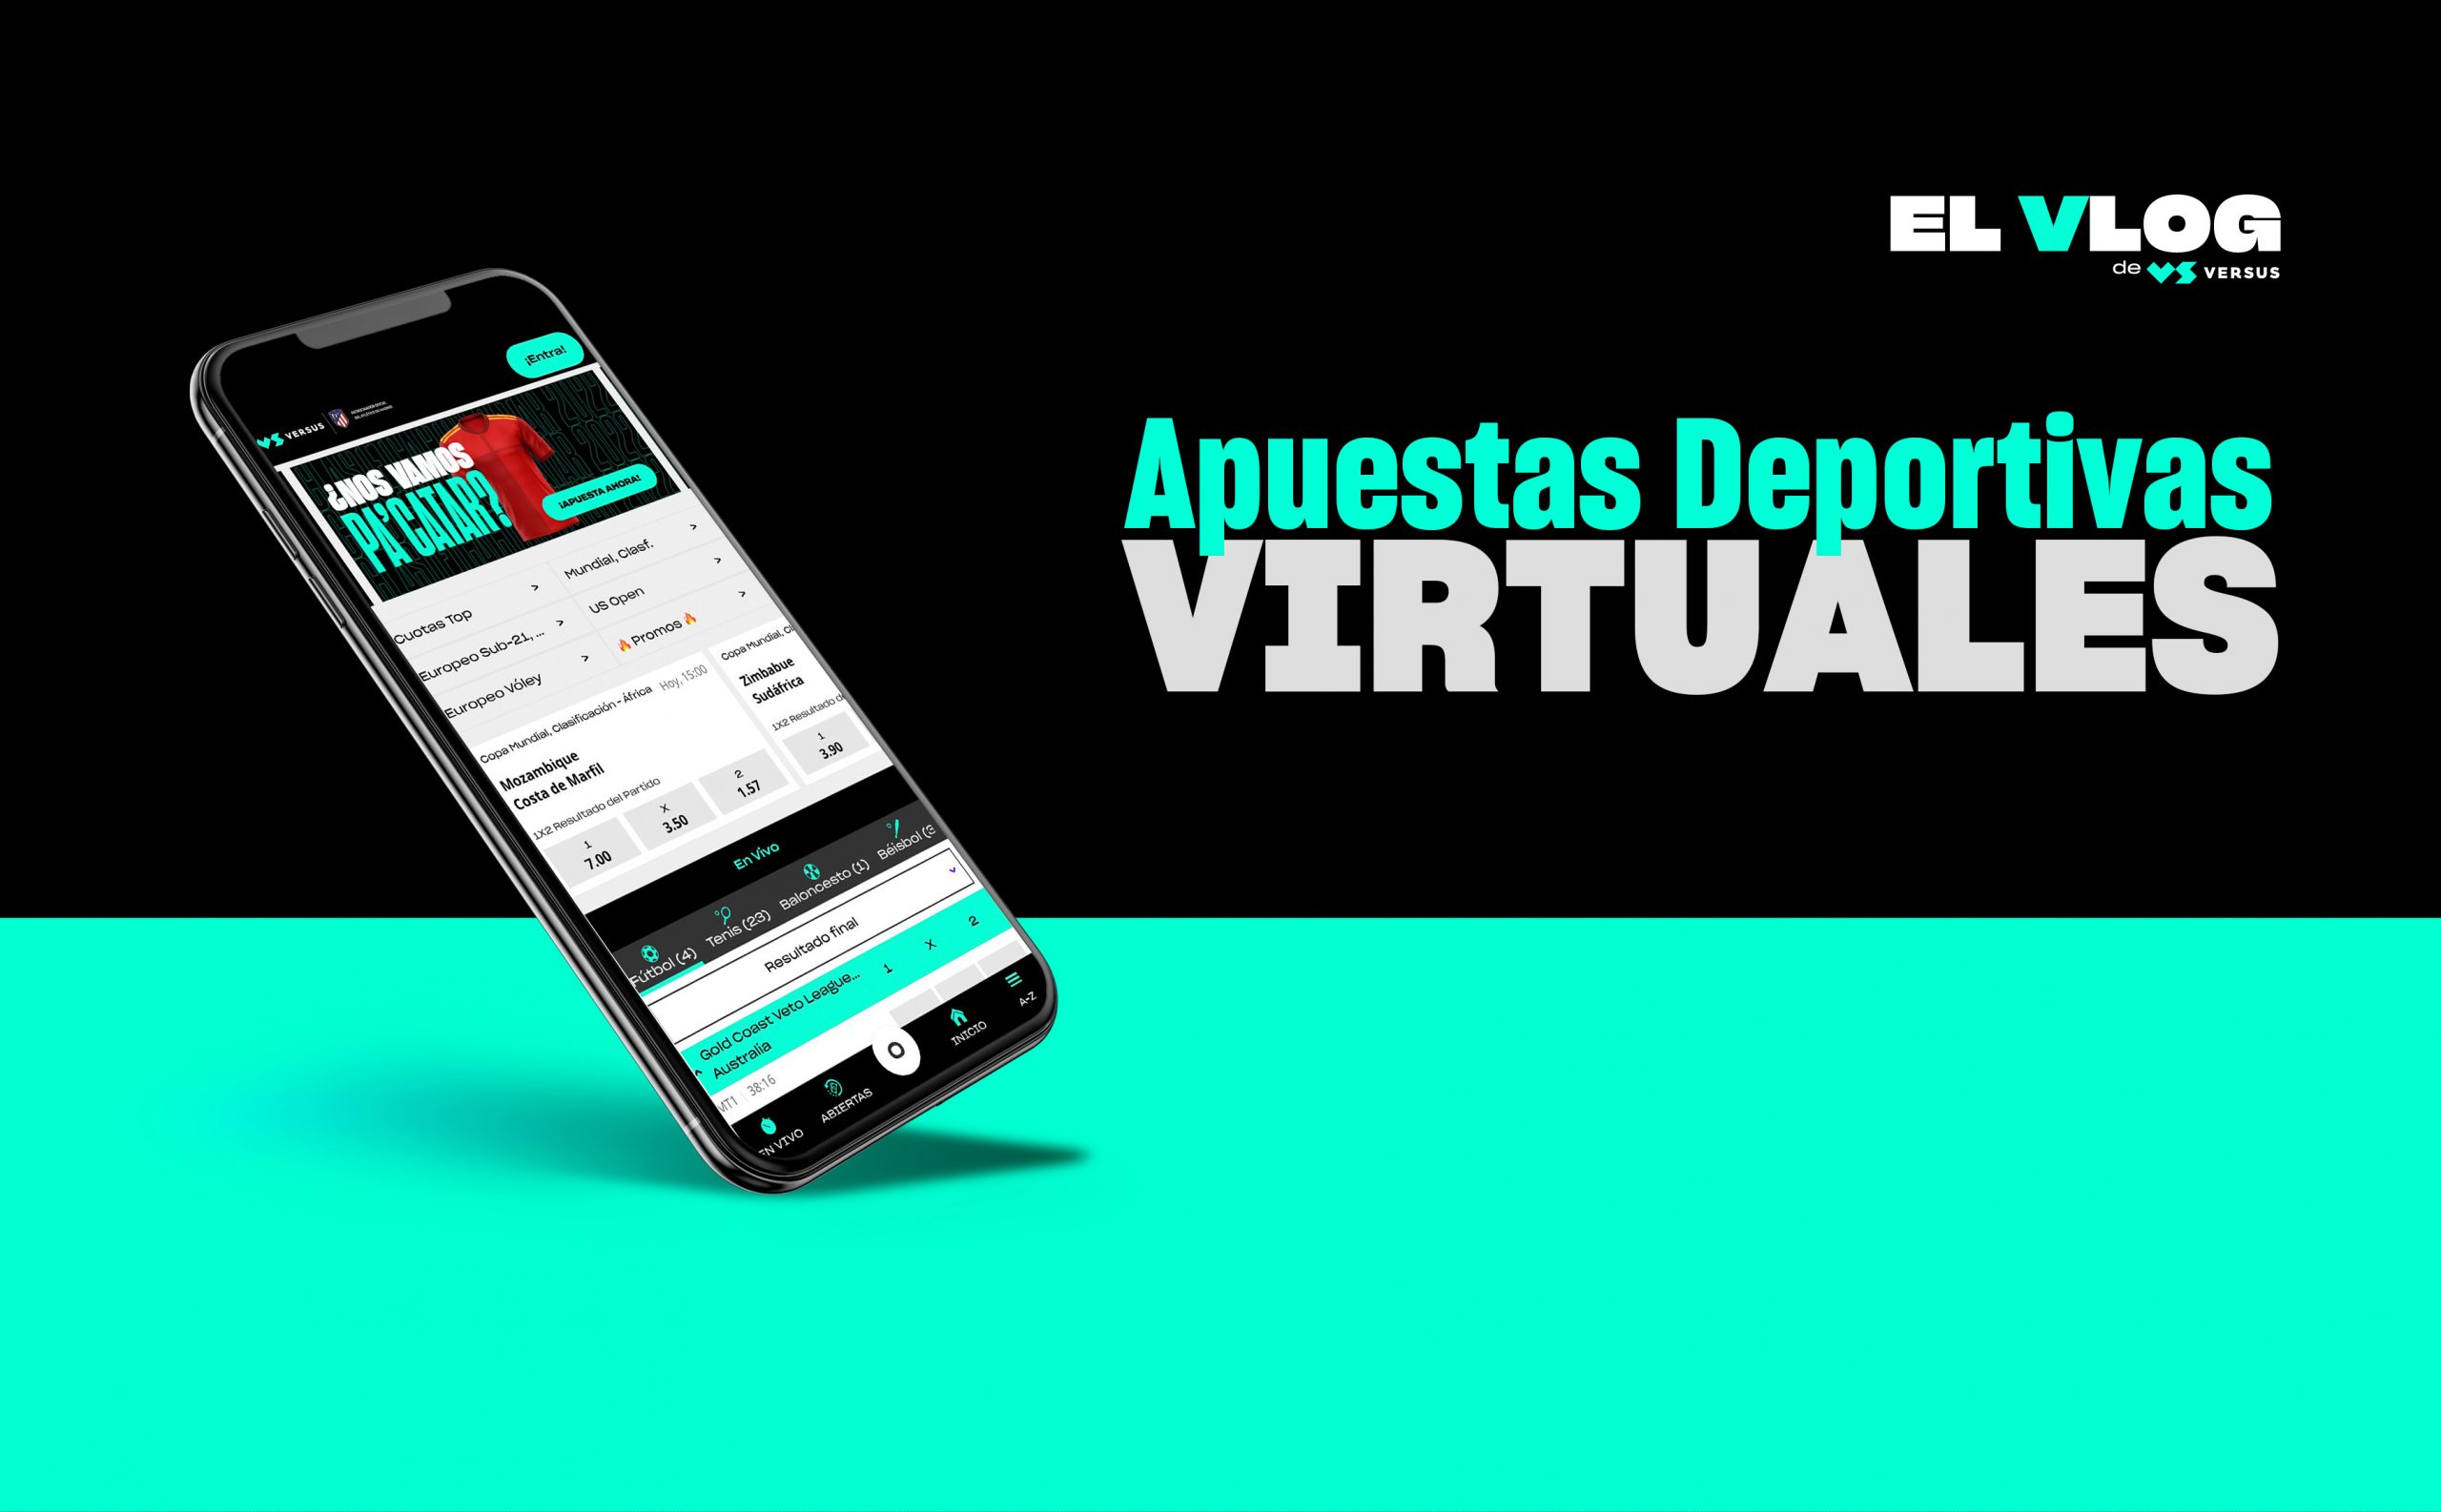 Apuestas virtuales emocionantes en español